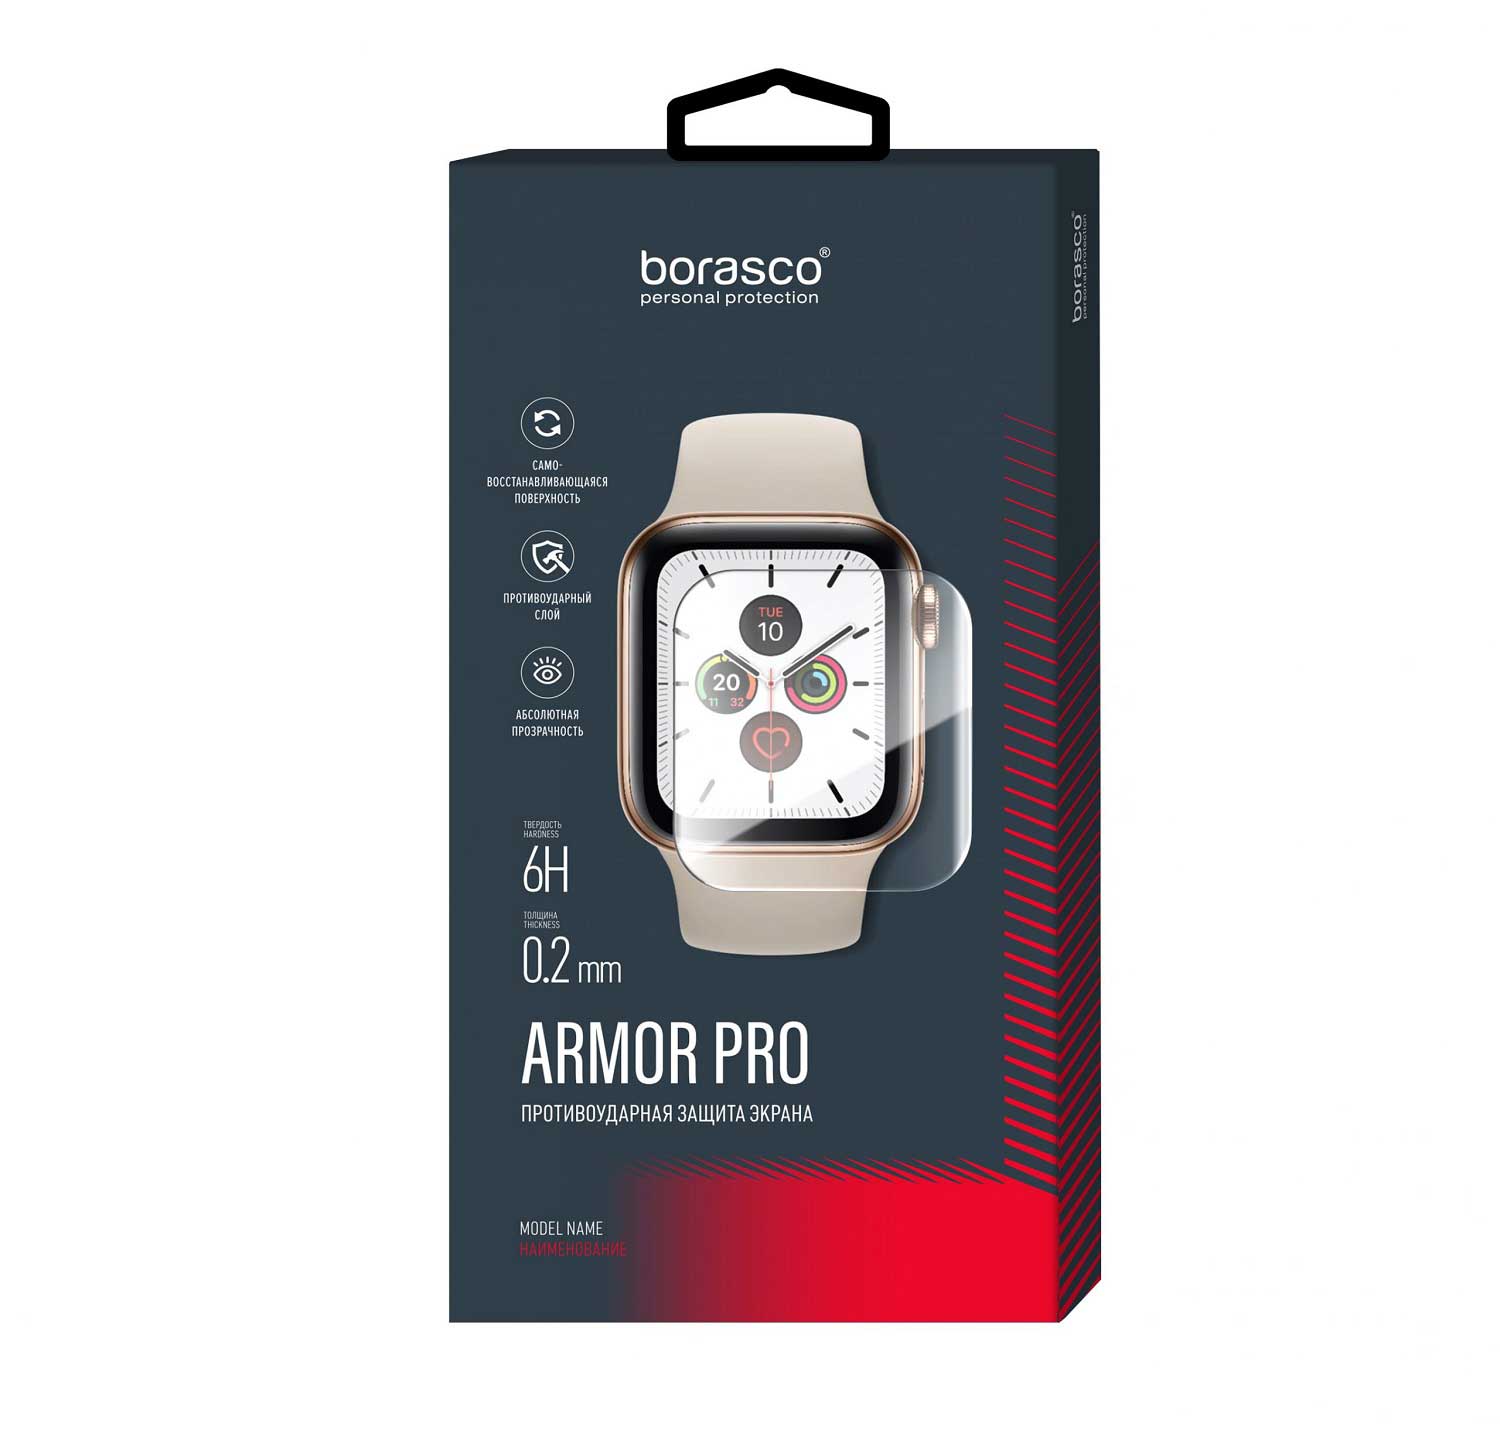 Защита экрана BoraSCO Armor Pro для Xiaomi Mi Band 2 матовый защита экрана borasco armor pro для honor band 2 матовый